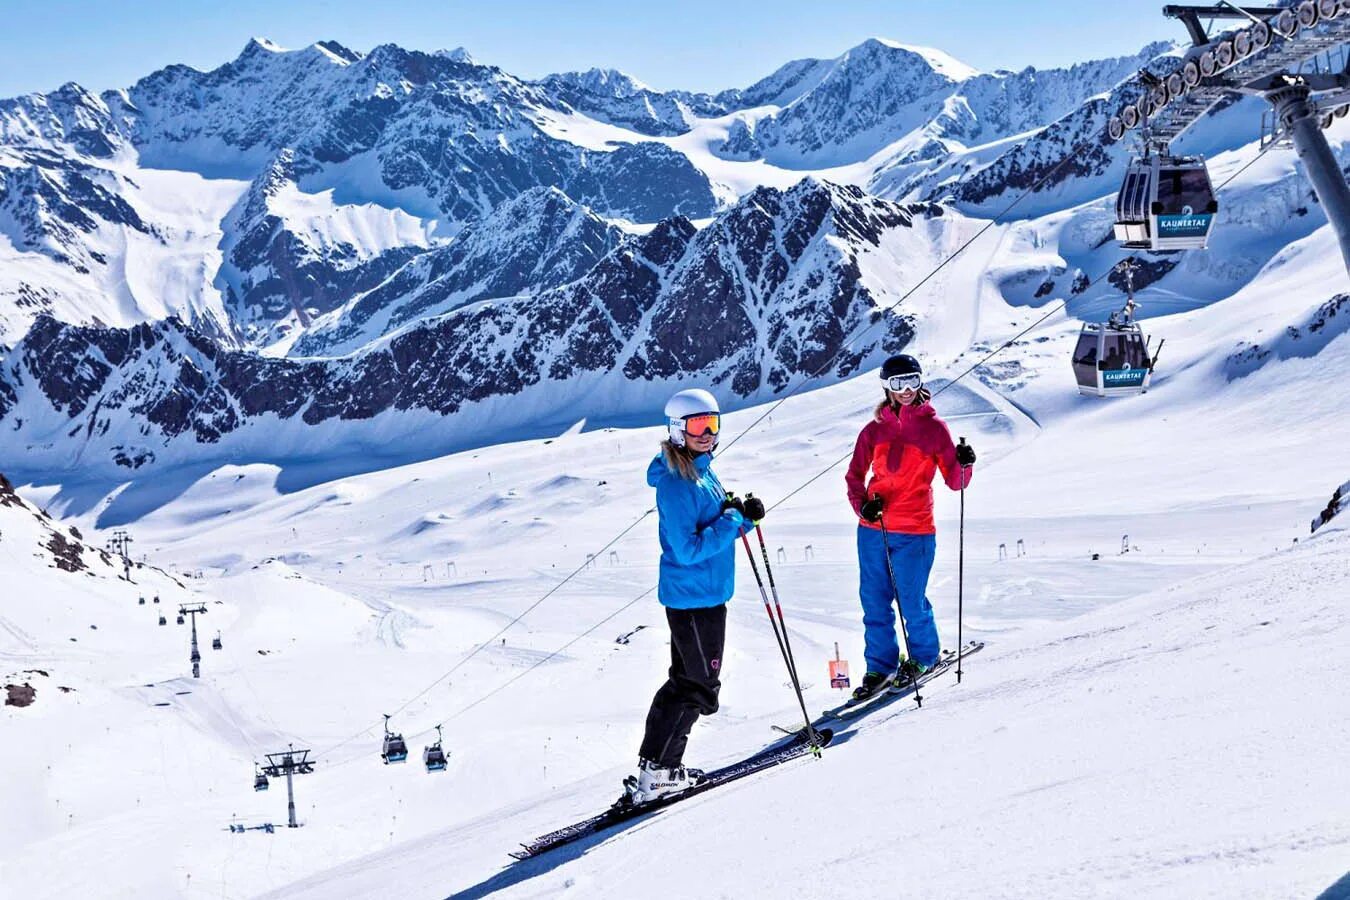 Лех Австрия горнолыжный курорт. Каунерталь Австрия ледник. Австрия Альпы горнолыжные курорты. Австрия лыжи. В чем ходят на горнолыжных курортах